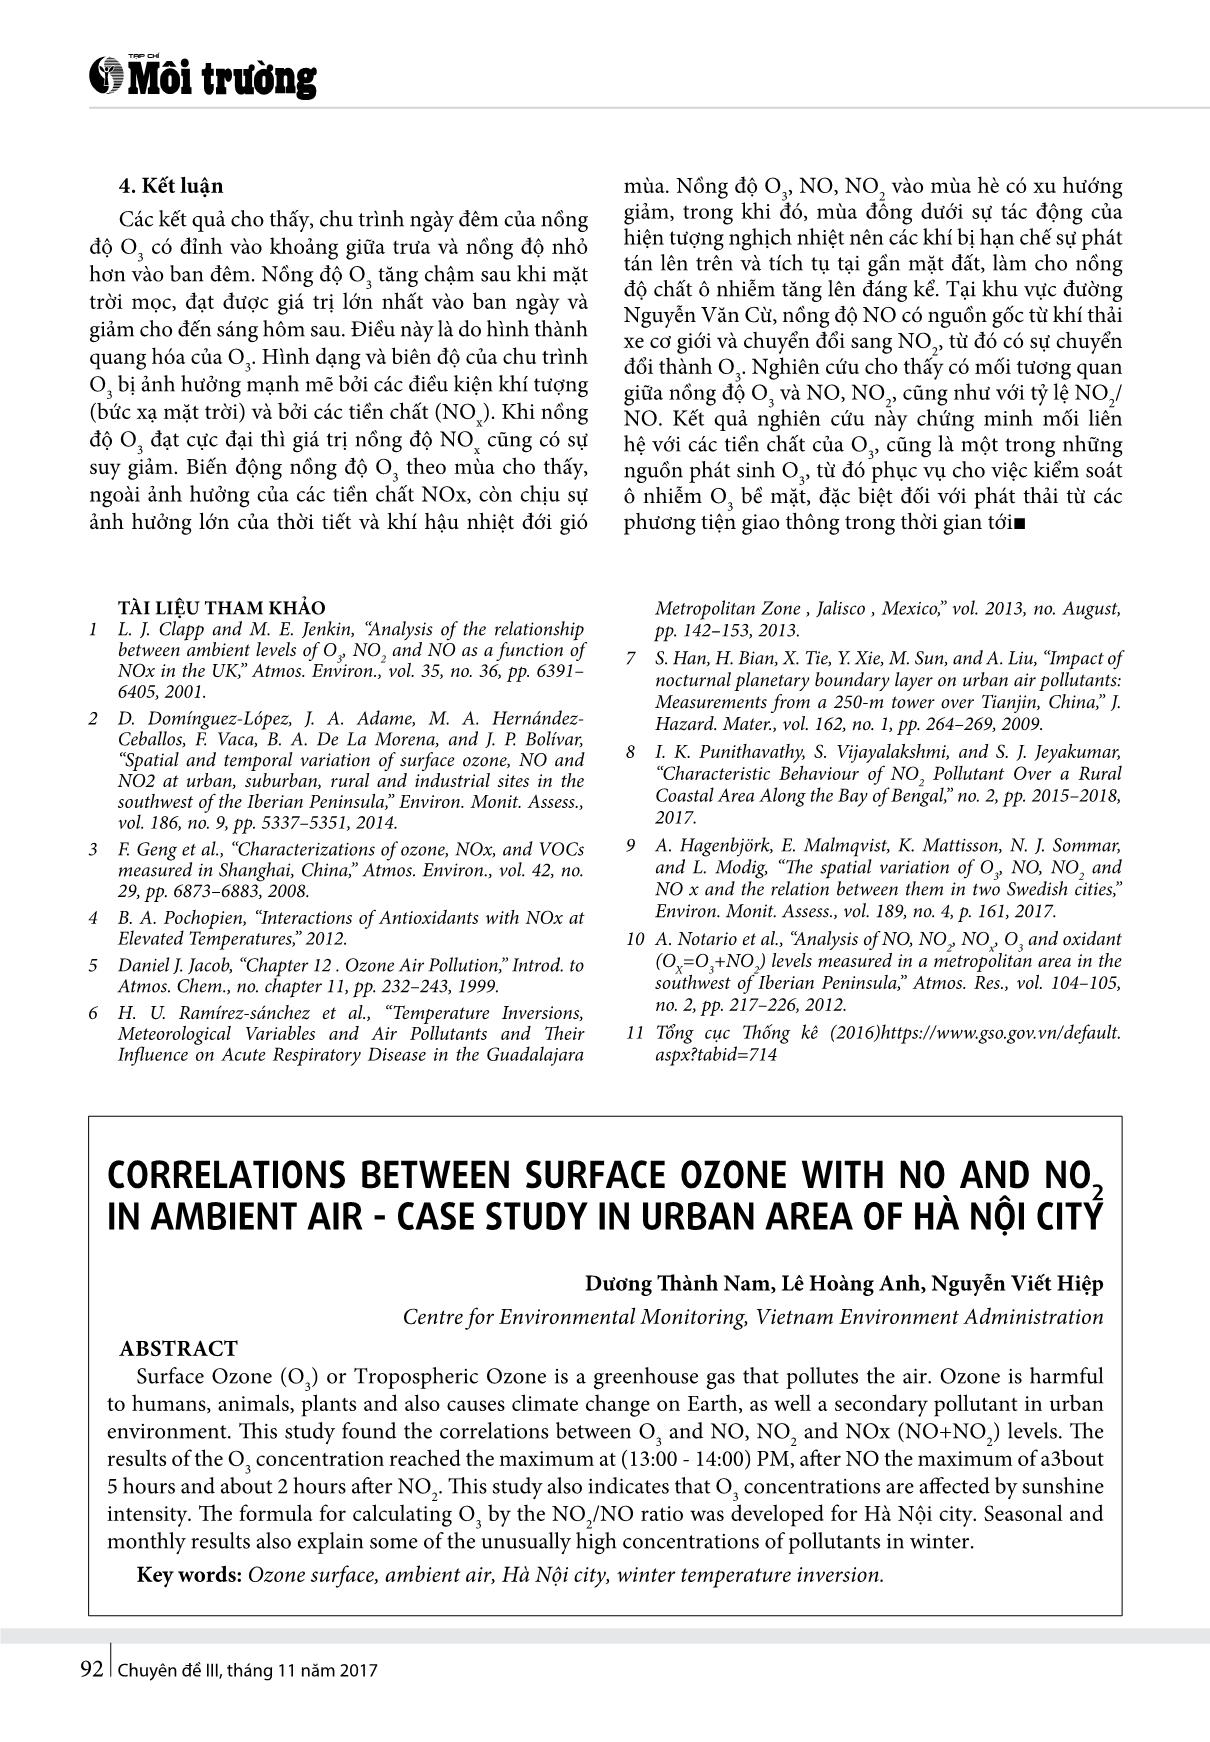 Mối quan hệ giữa ôzôn tầng mặt với NO, NO2 trong không khí xung quanh - Thực nghiệm tại khu vực đô thị của Hà Nội trang 5